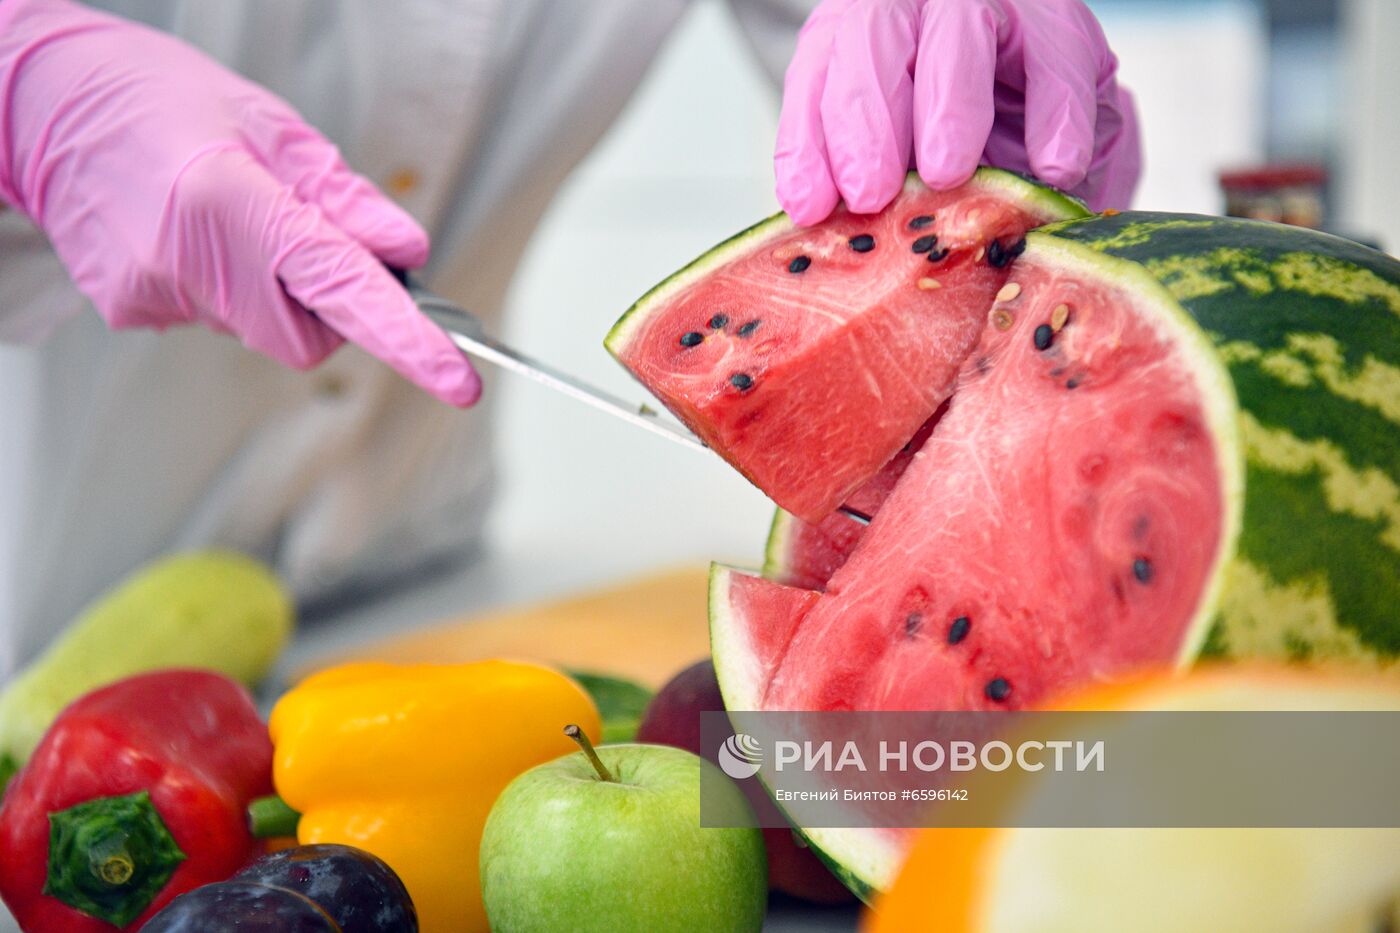 В. Жириновский посетил Федеральный исследовательский центр питания и биотехнологии